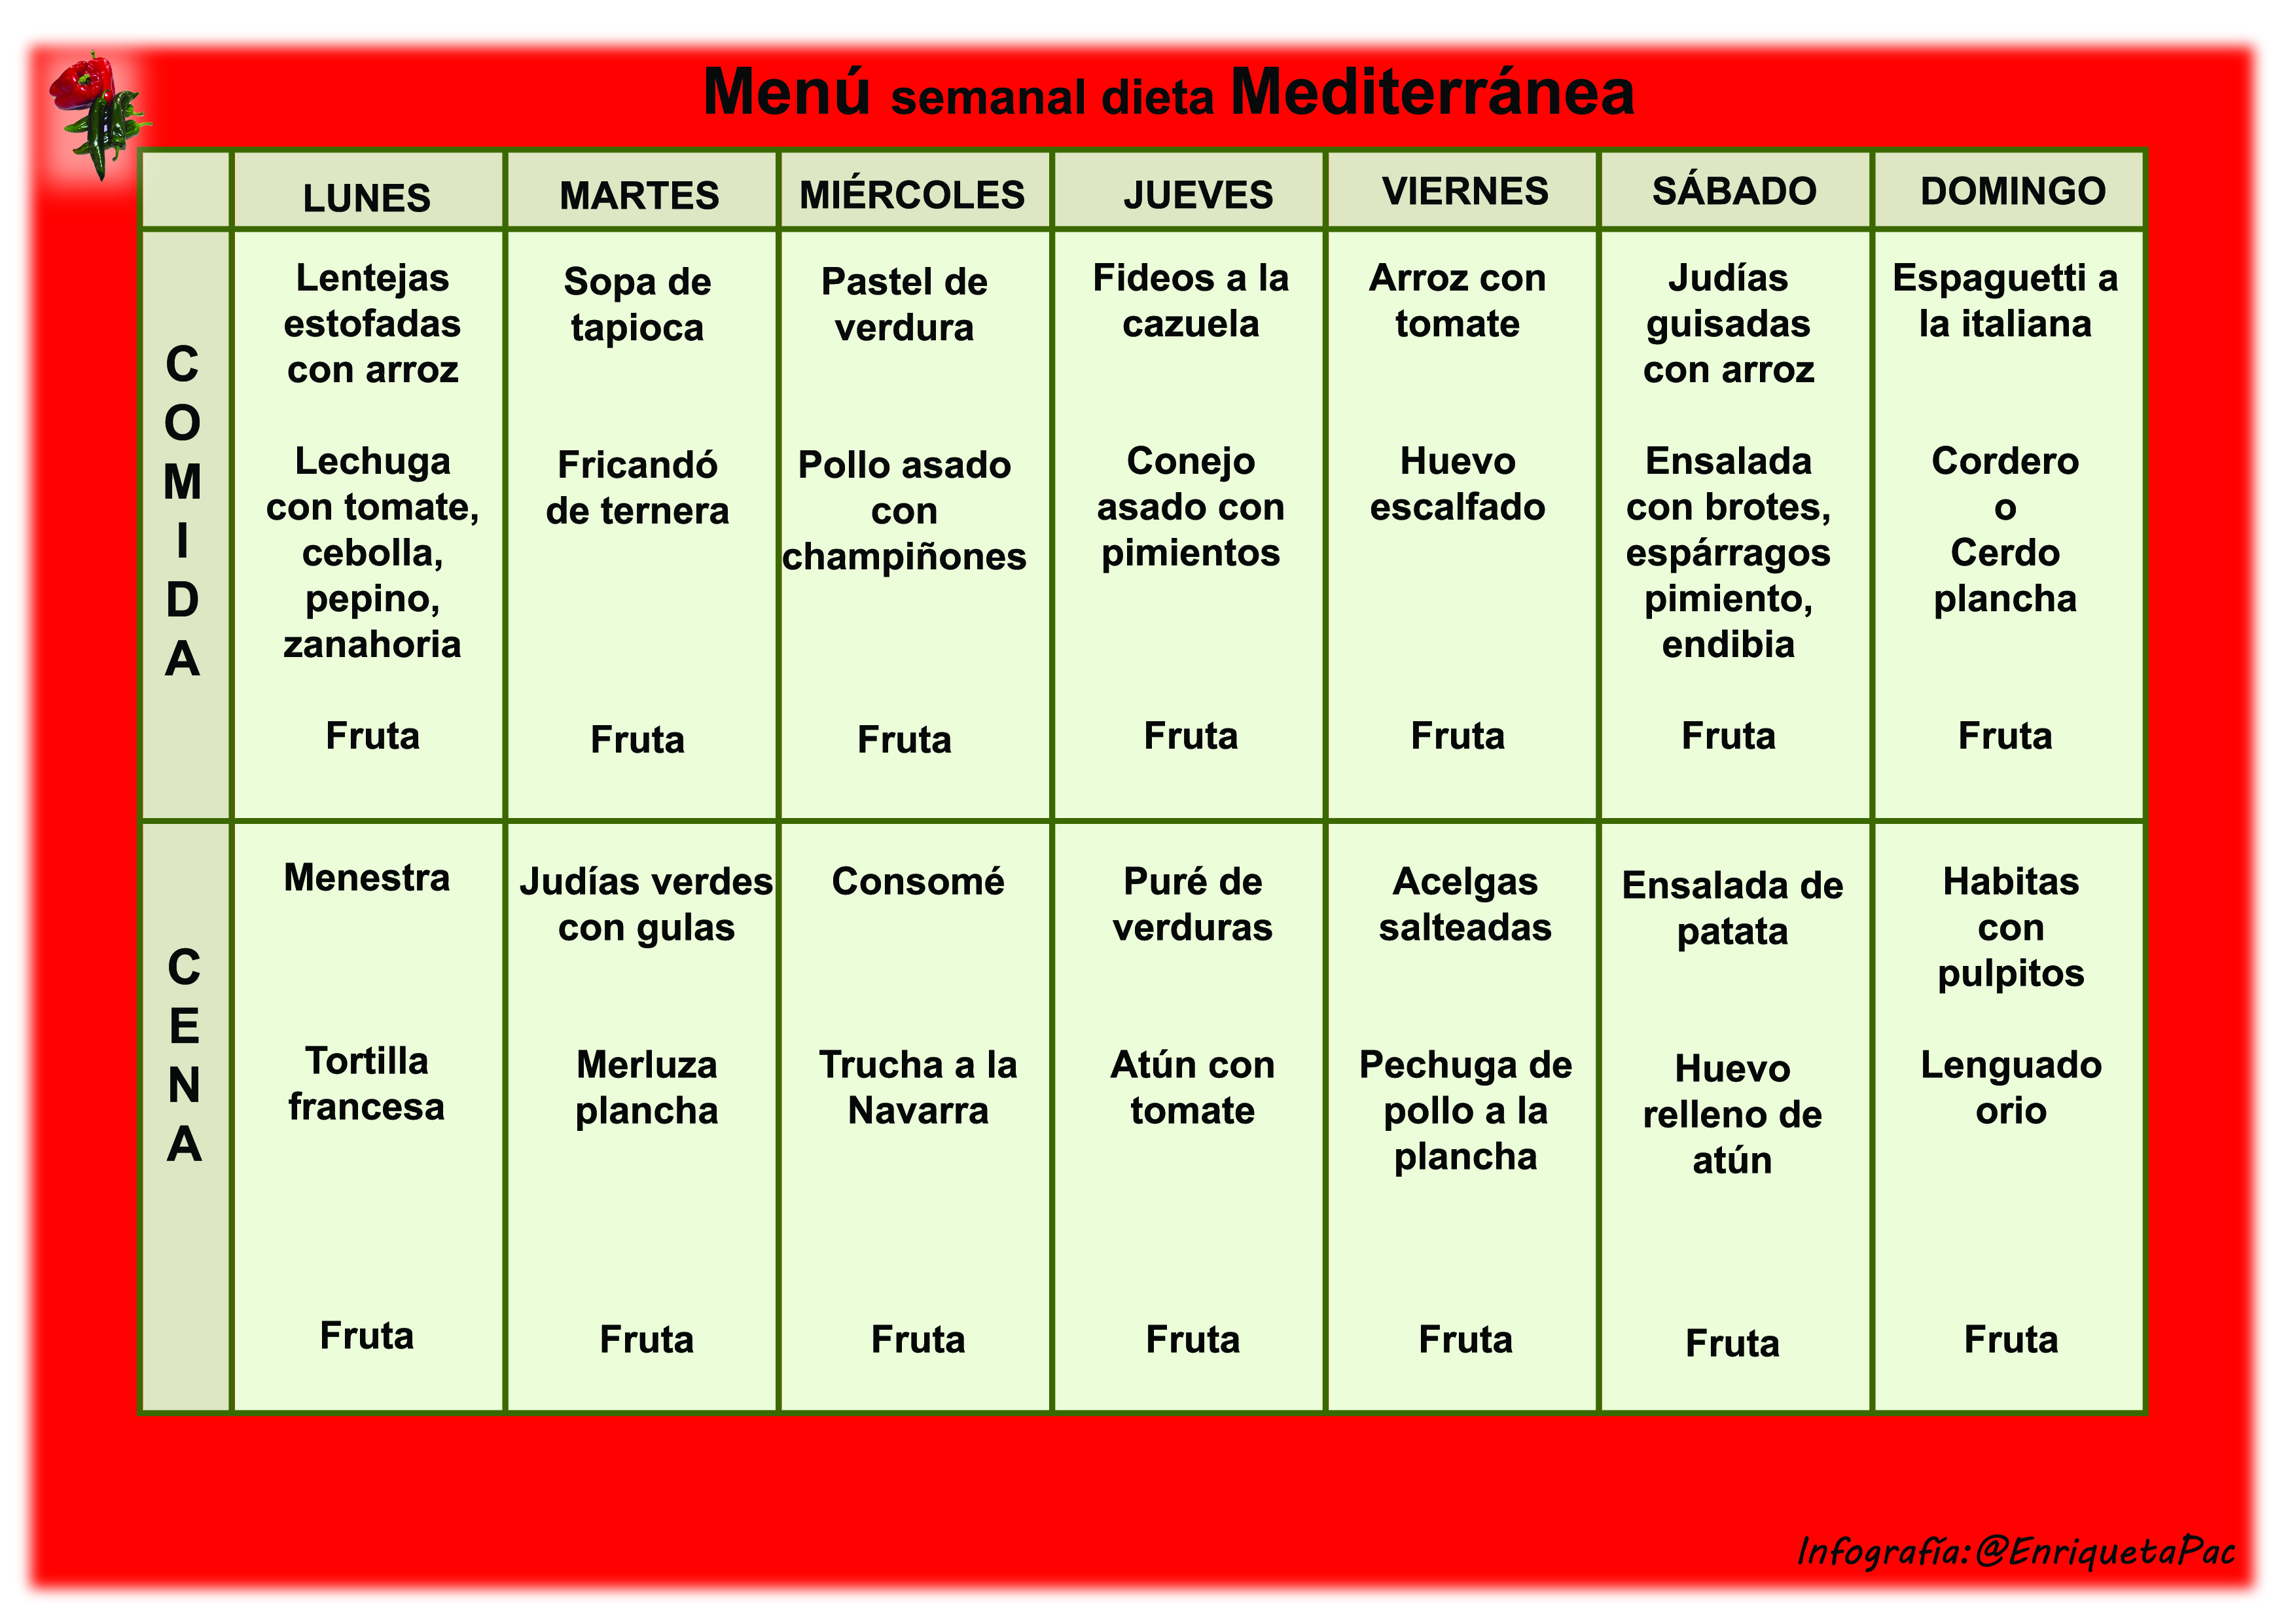 Dieta mediterranea menu semanal